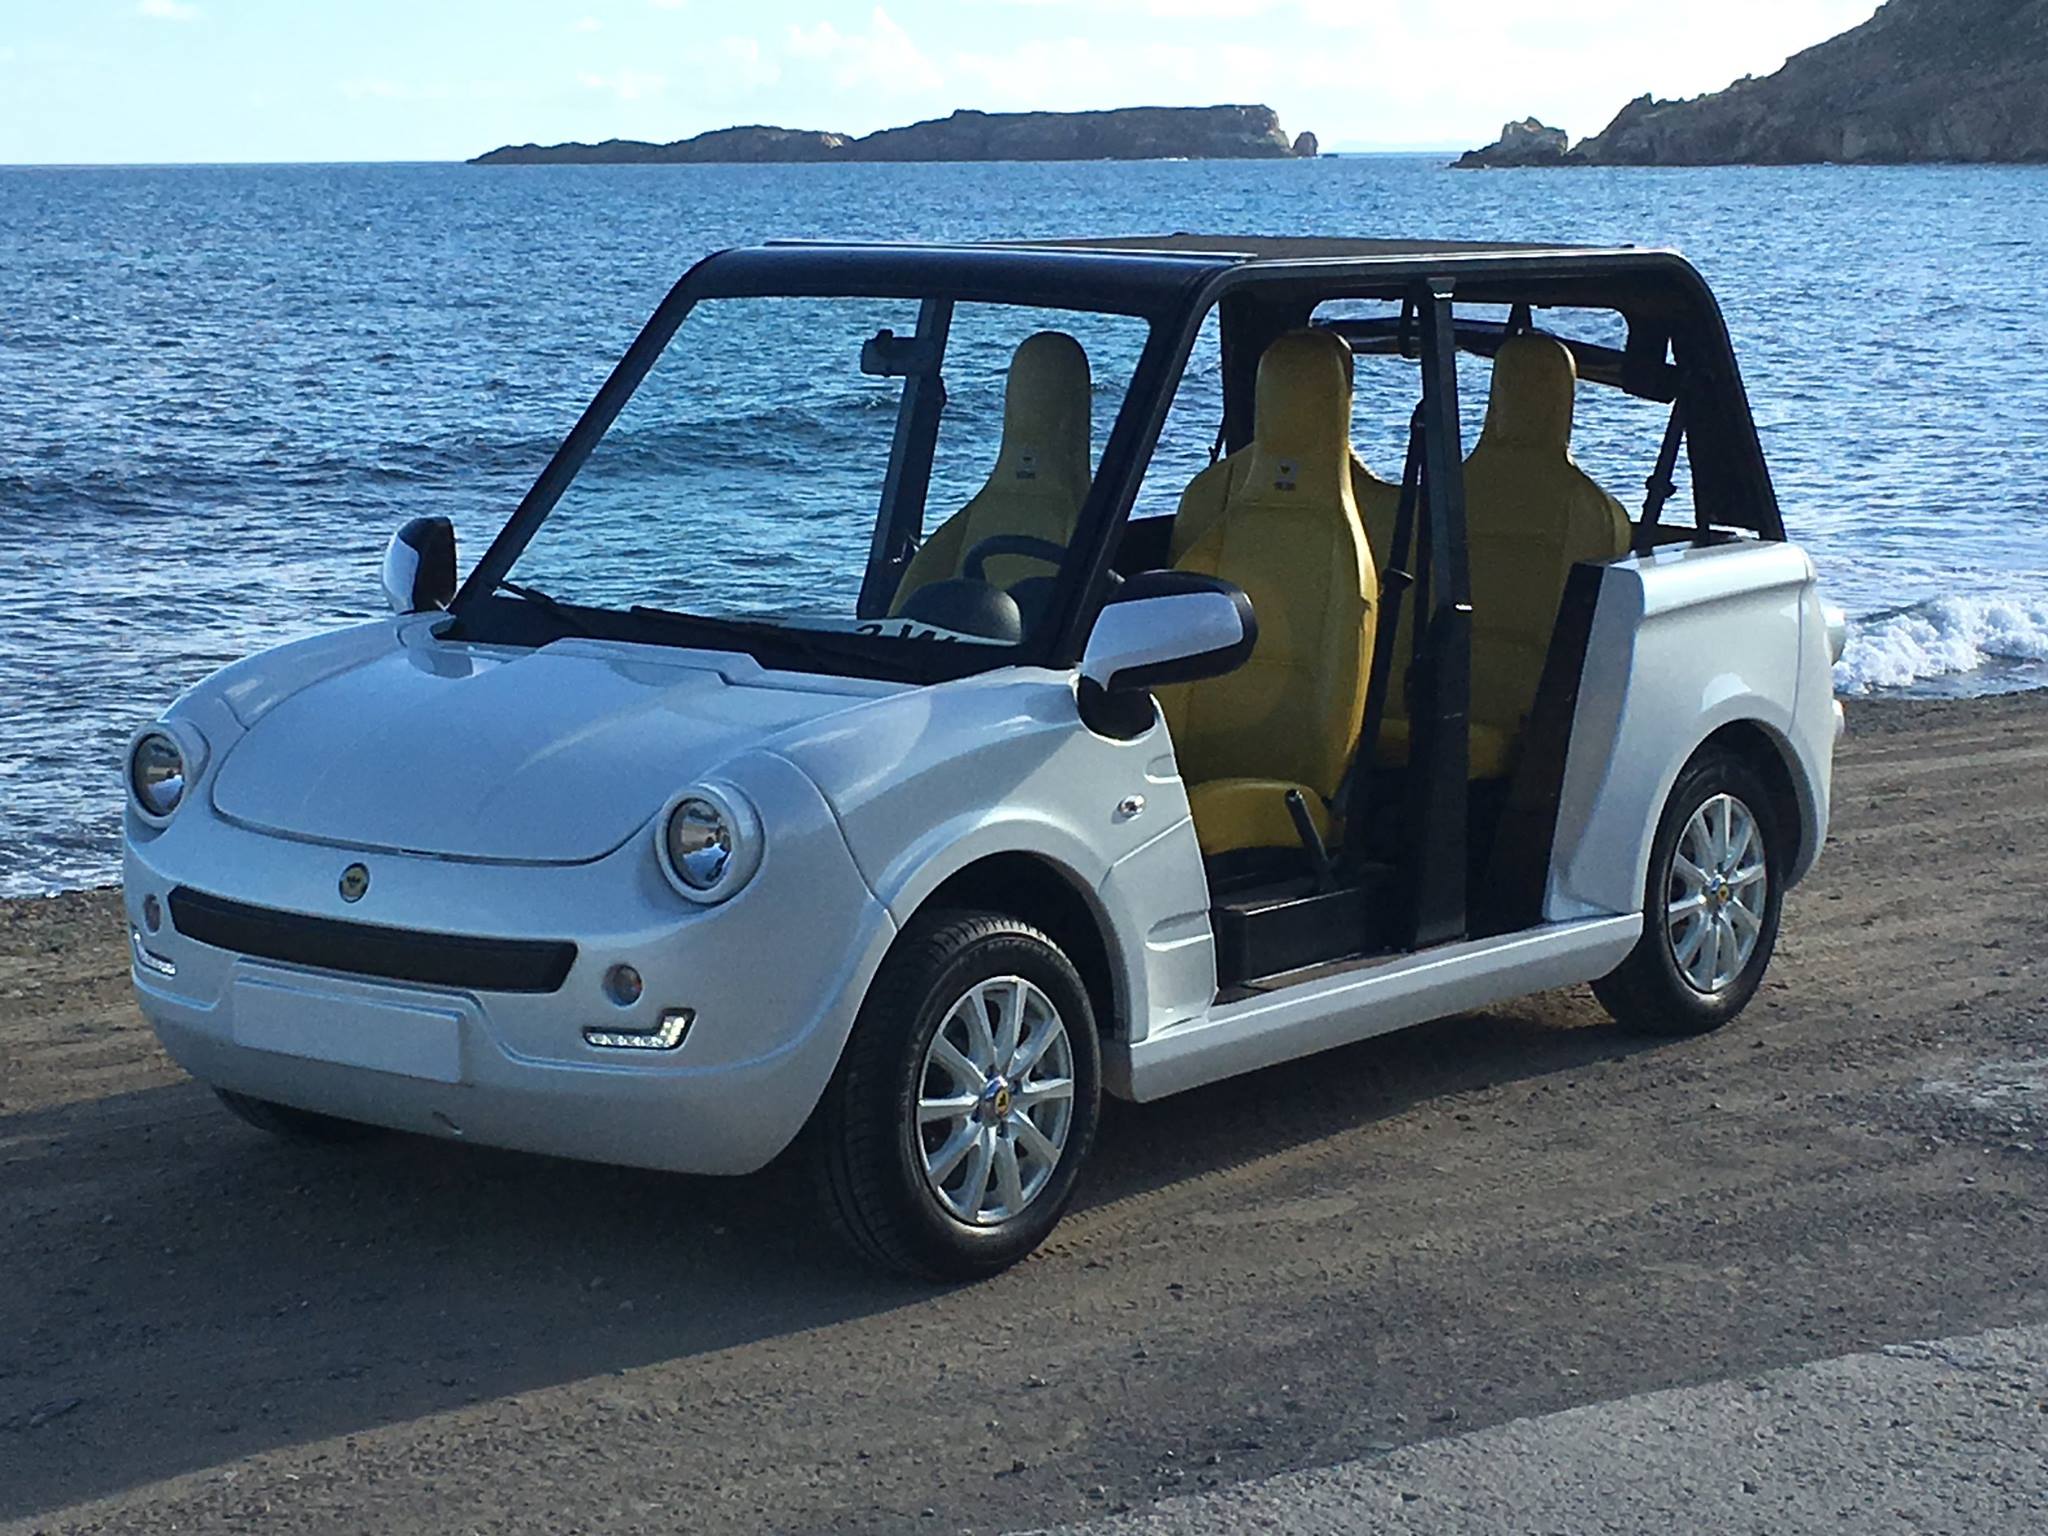 Innovation : Saint-Barthélémy ville-test pour le déploiement de la Bee-Bee XS, une voiture électrique au service du tourisme